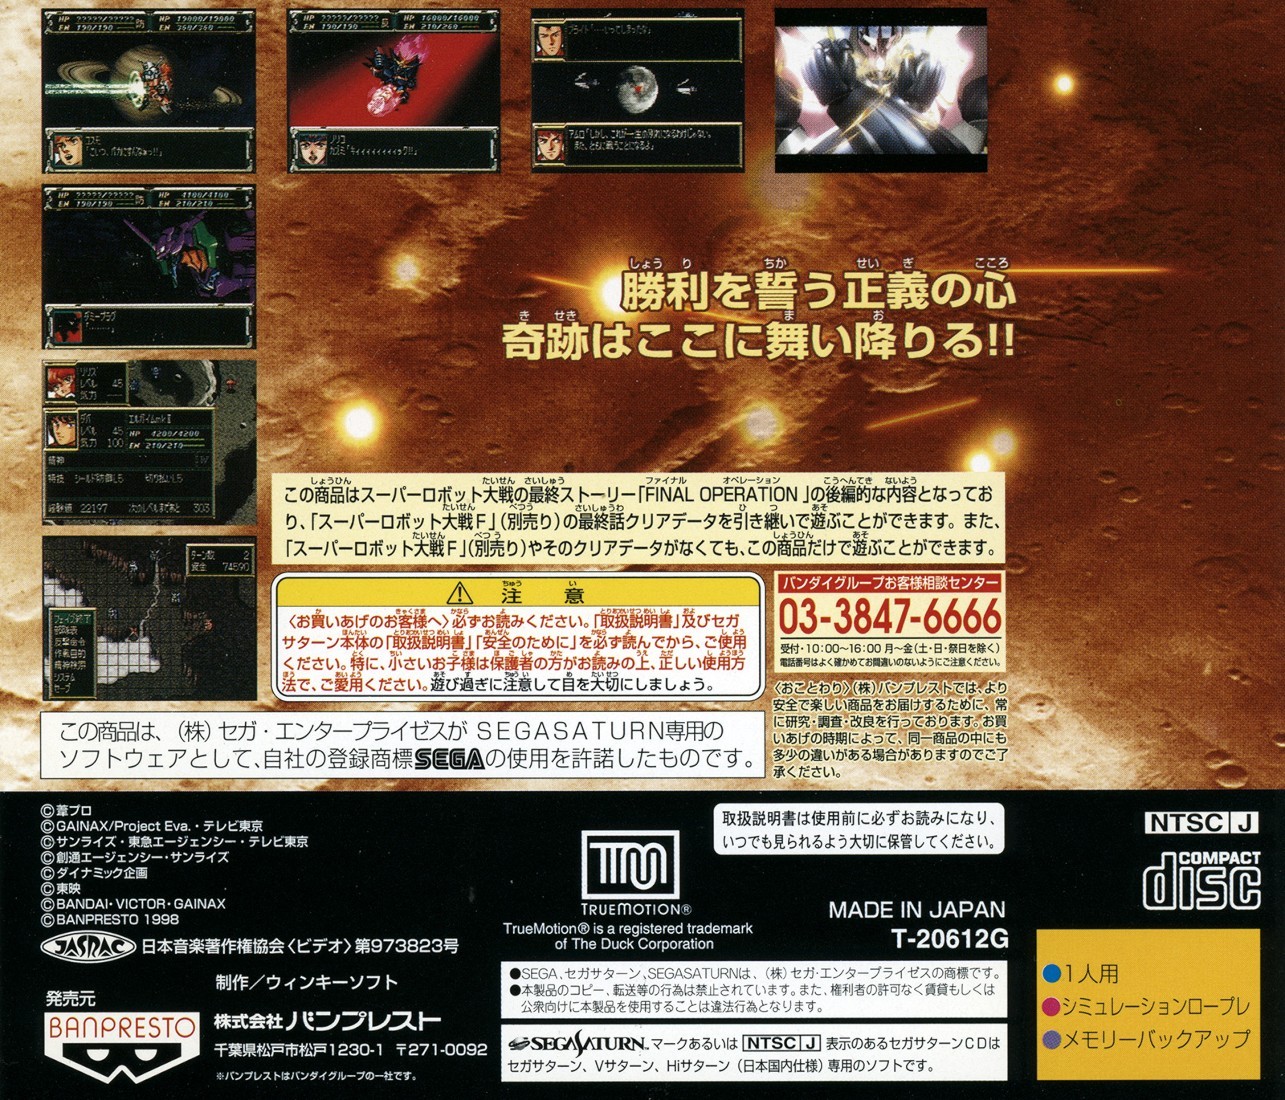 Capa do jogo Super Robot Taisen F Kanketsuhen